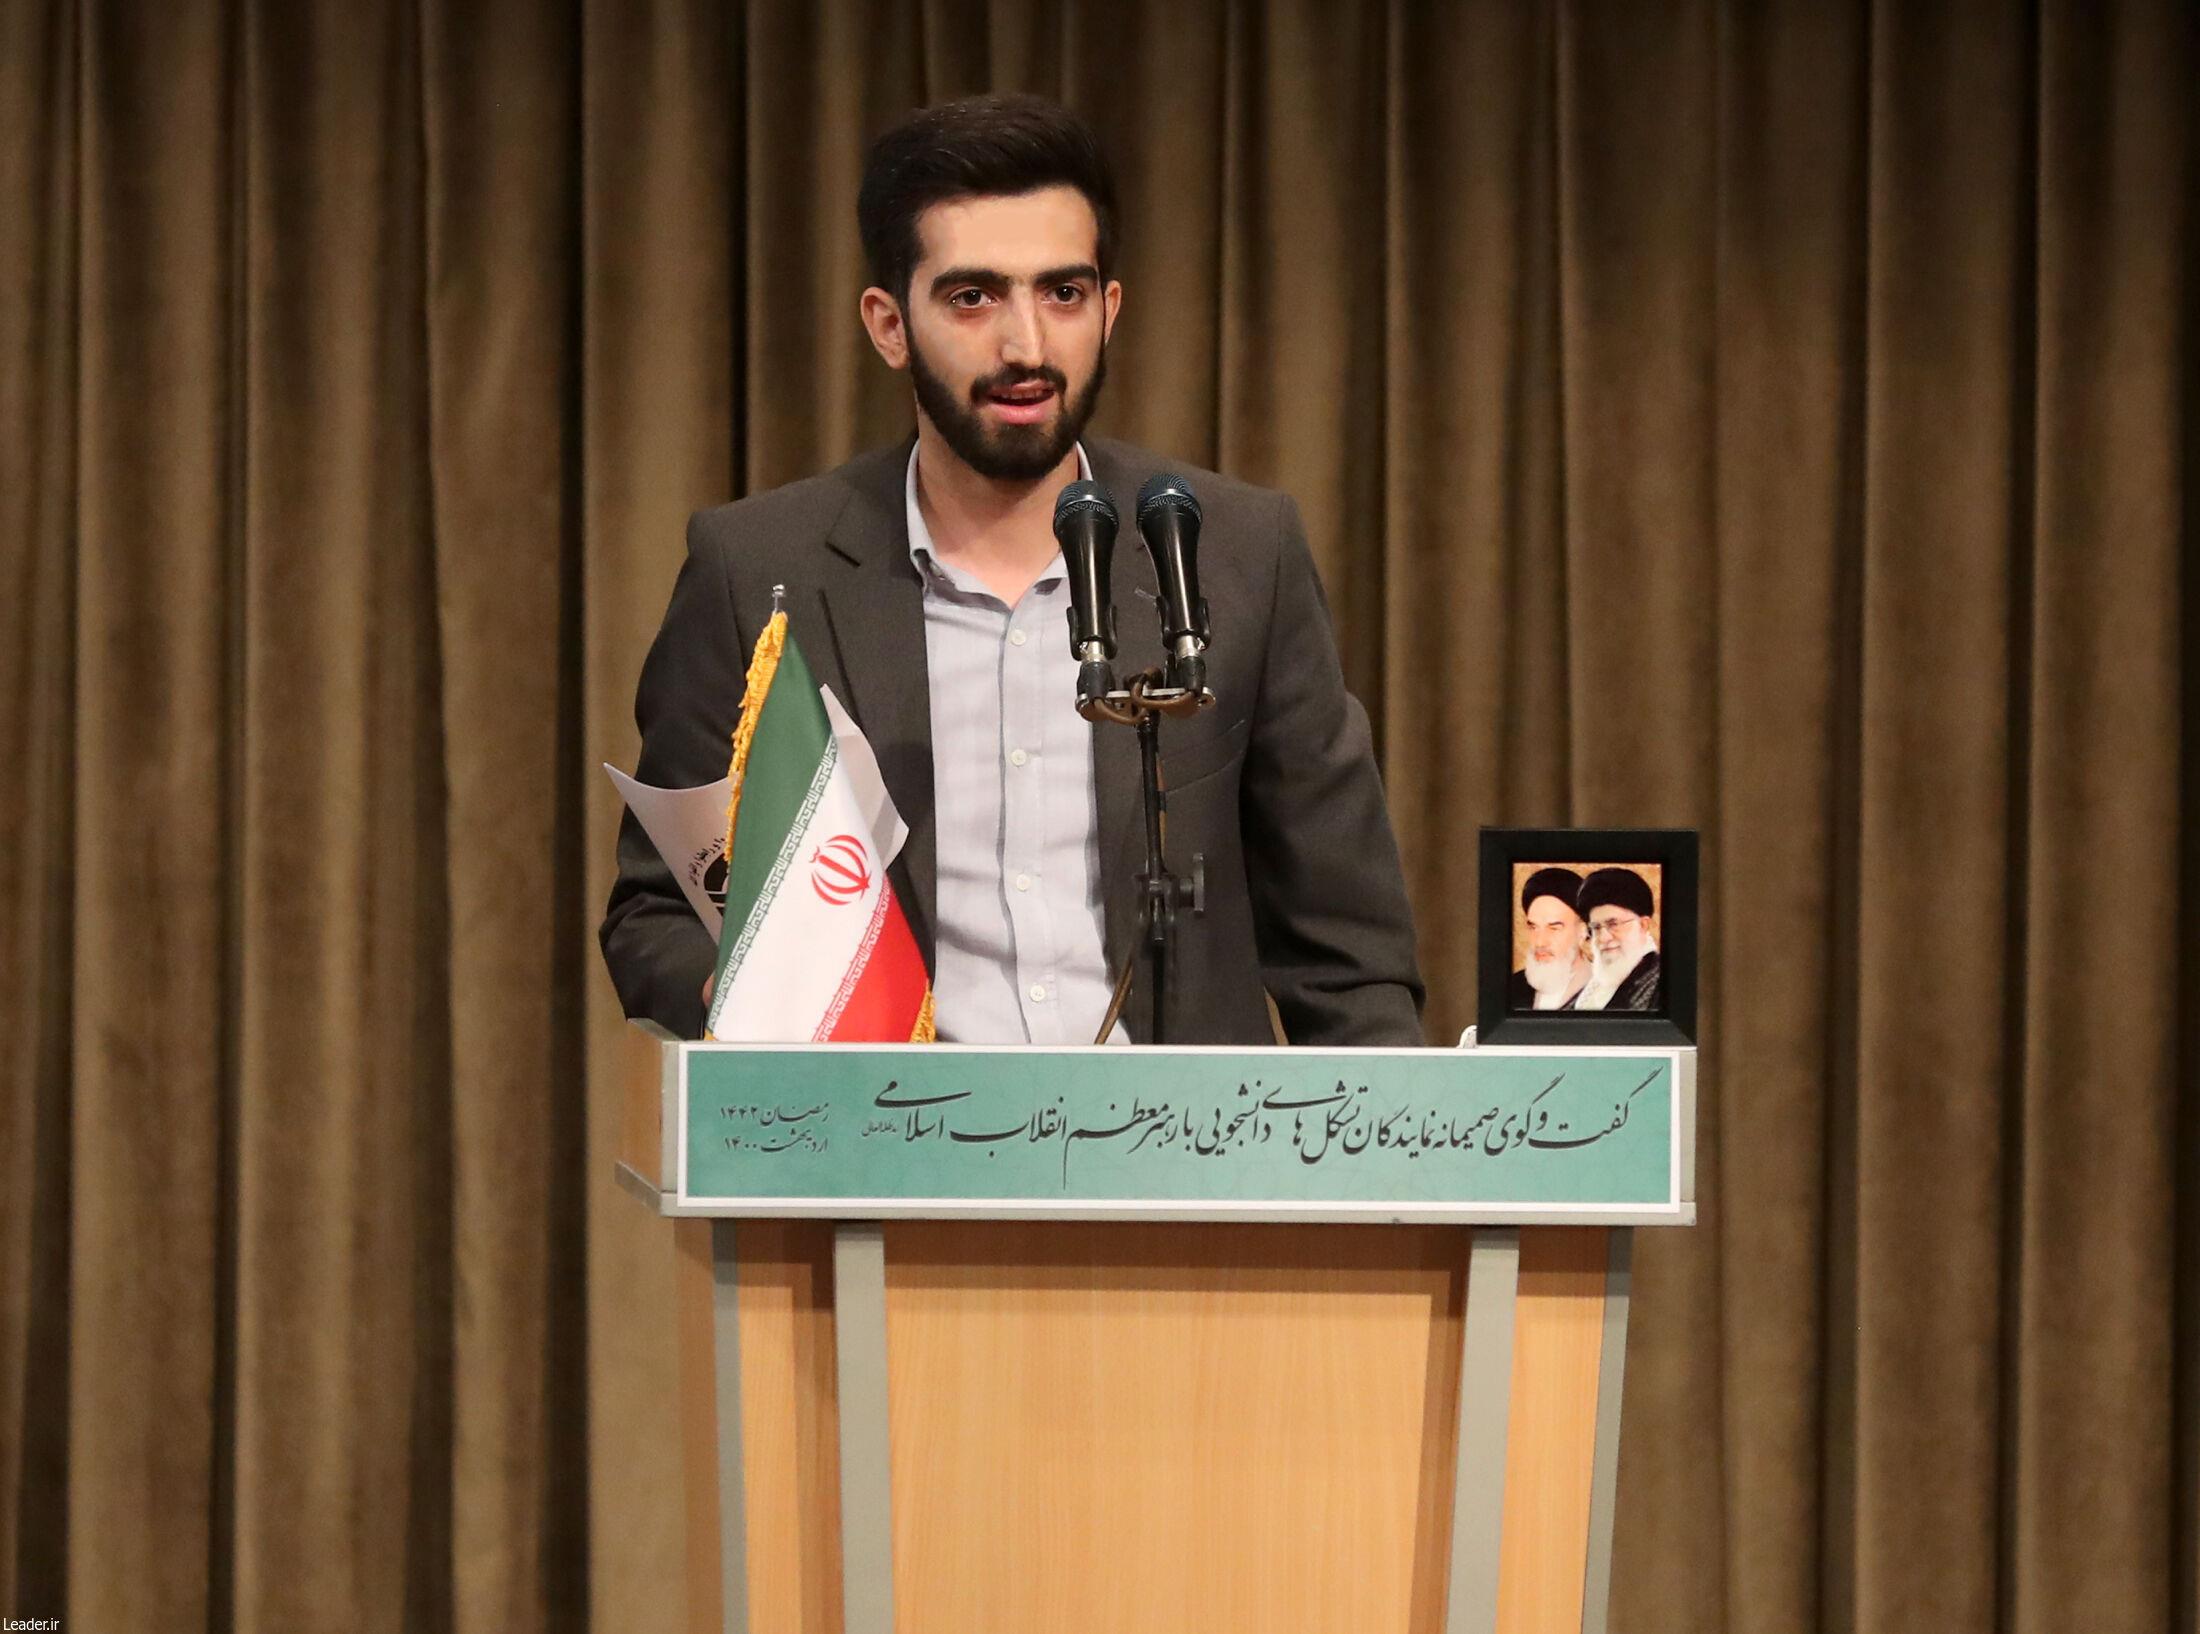 سخنرانی دبیرکل اتحادیه جامعه اسلامی دانشجویان در محضر رهبر معظم انقلاب